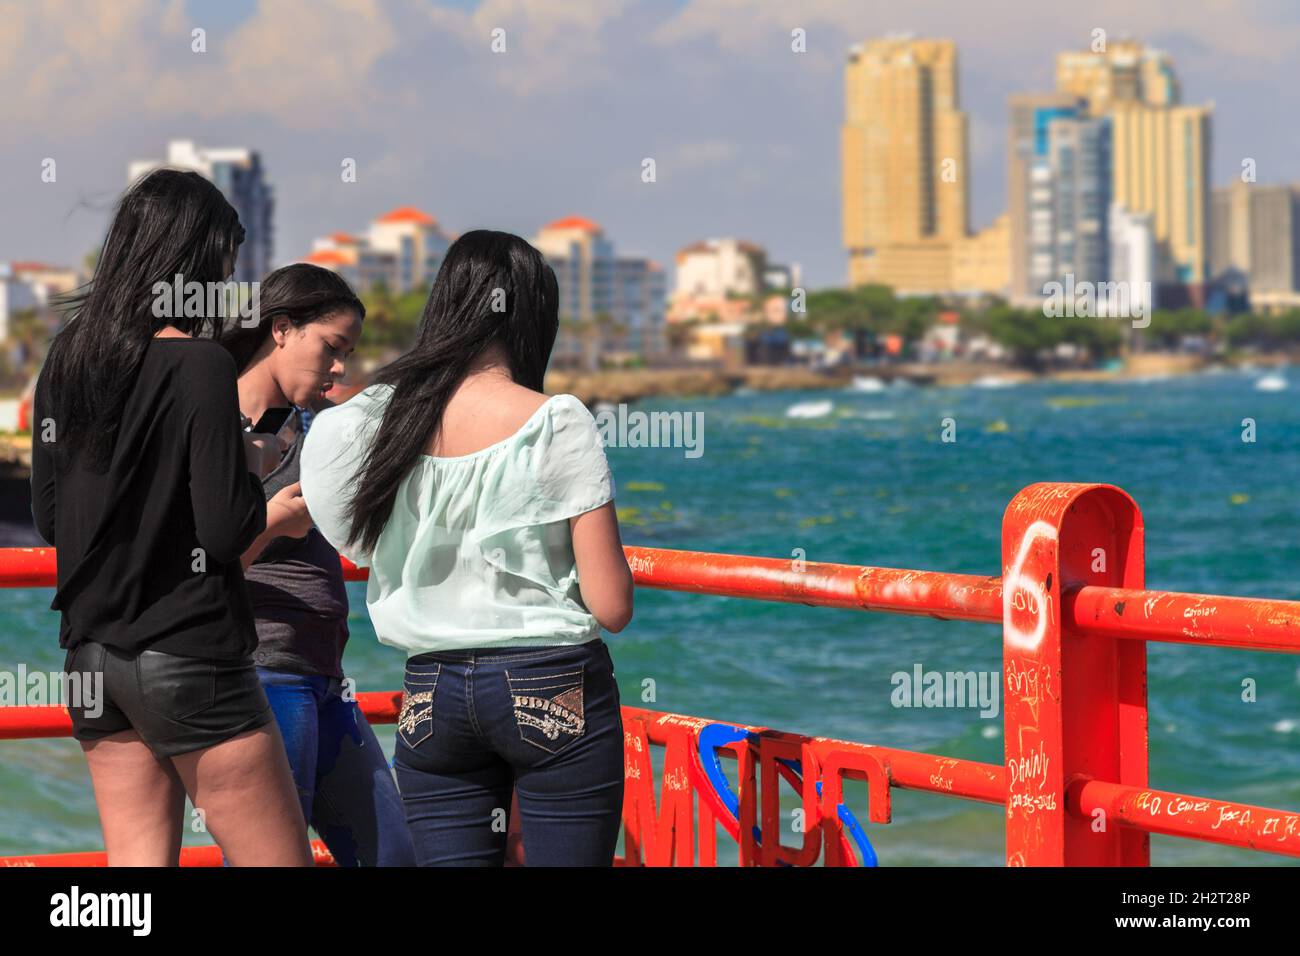 Saint-Domingue, Distrito Nacional, République dominicaine - 23 avril 2016 : trois jeunes femmes hispaniques debout sur un quai dans le pays d'Amérique latine République dominicaine. Banque D'Images